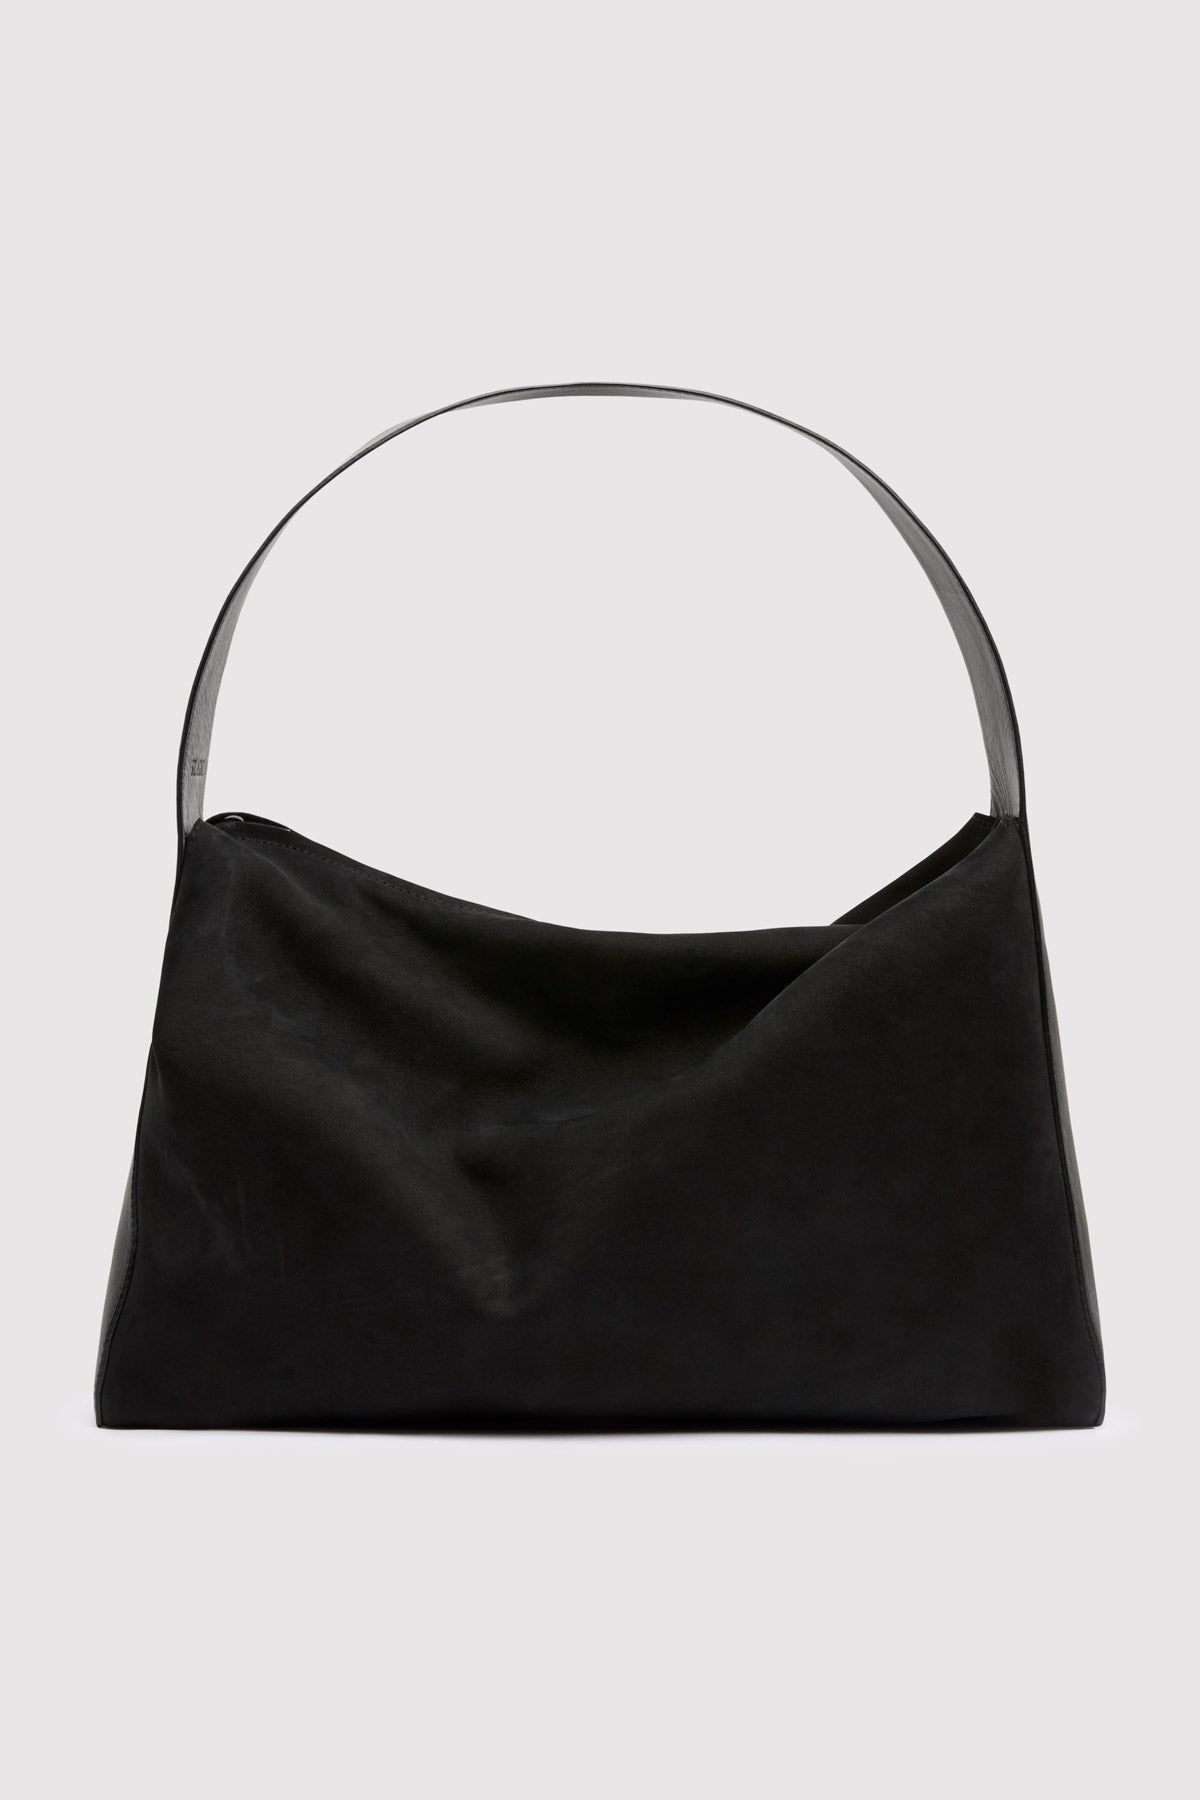 Soft Form Bag - Black